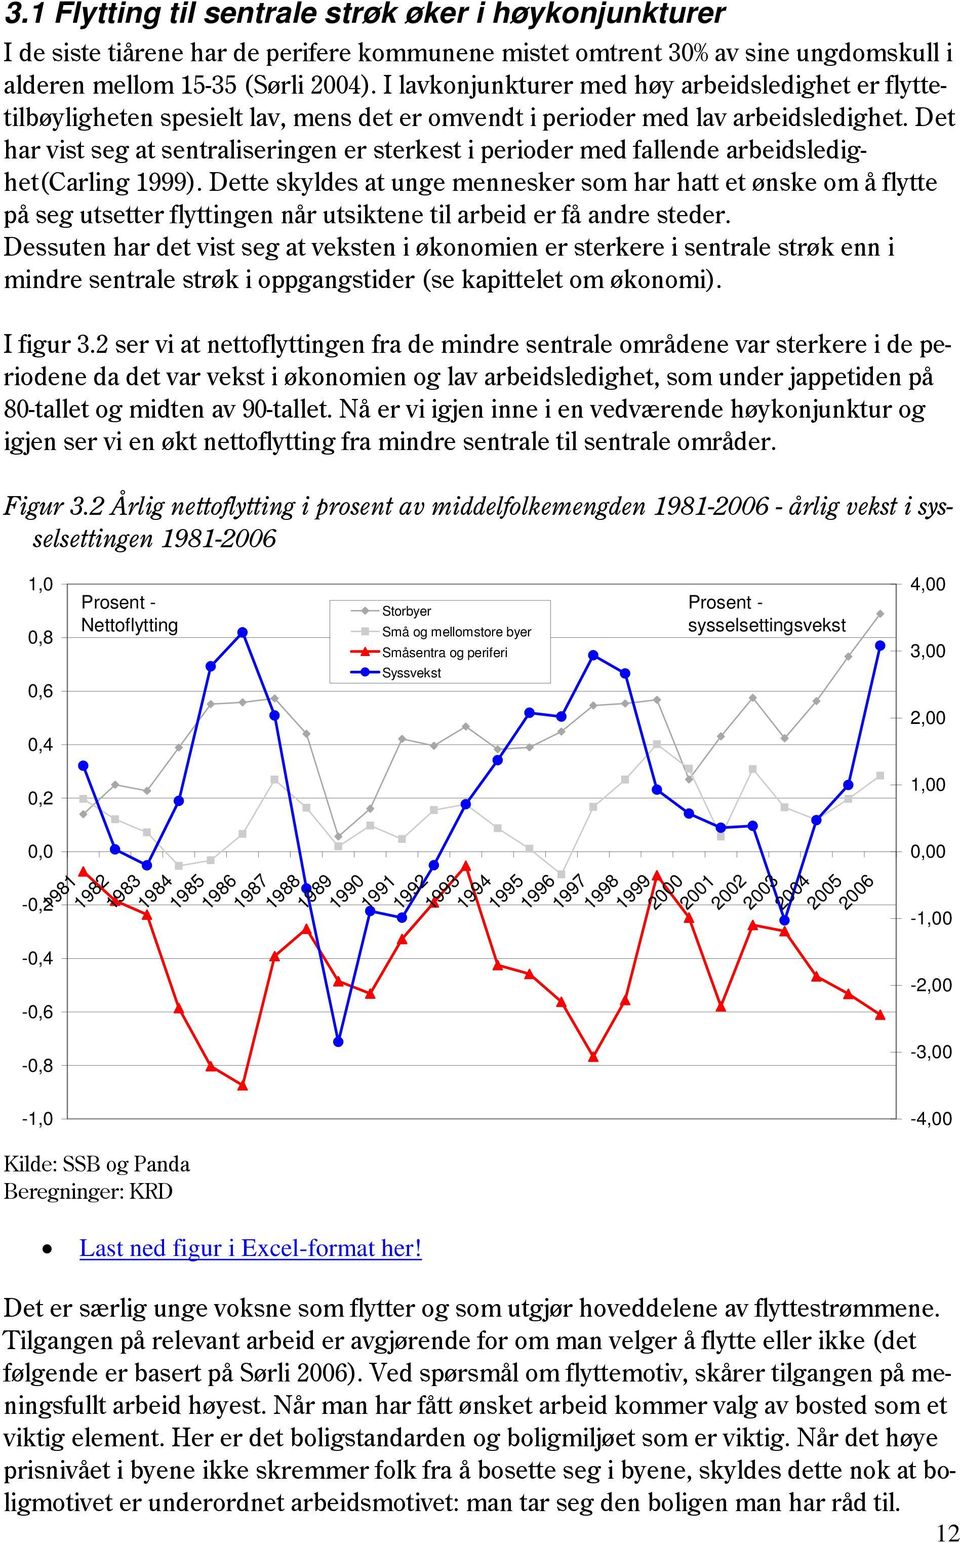 Det har vist seg at sentraliseringen er sterkest i perioder med fallende arbeidsledighet(carling 1999).